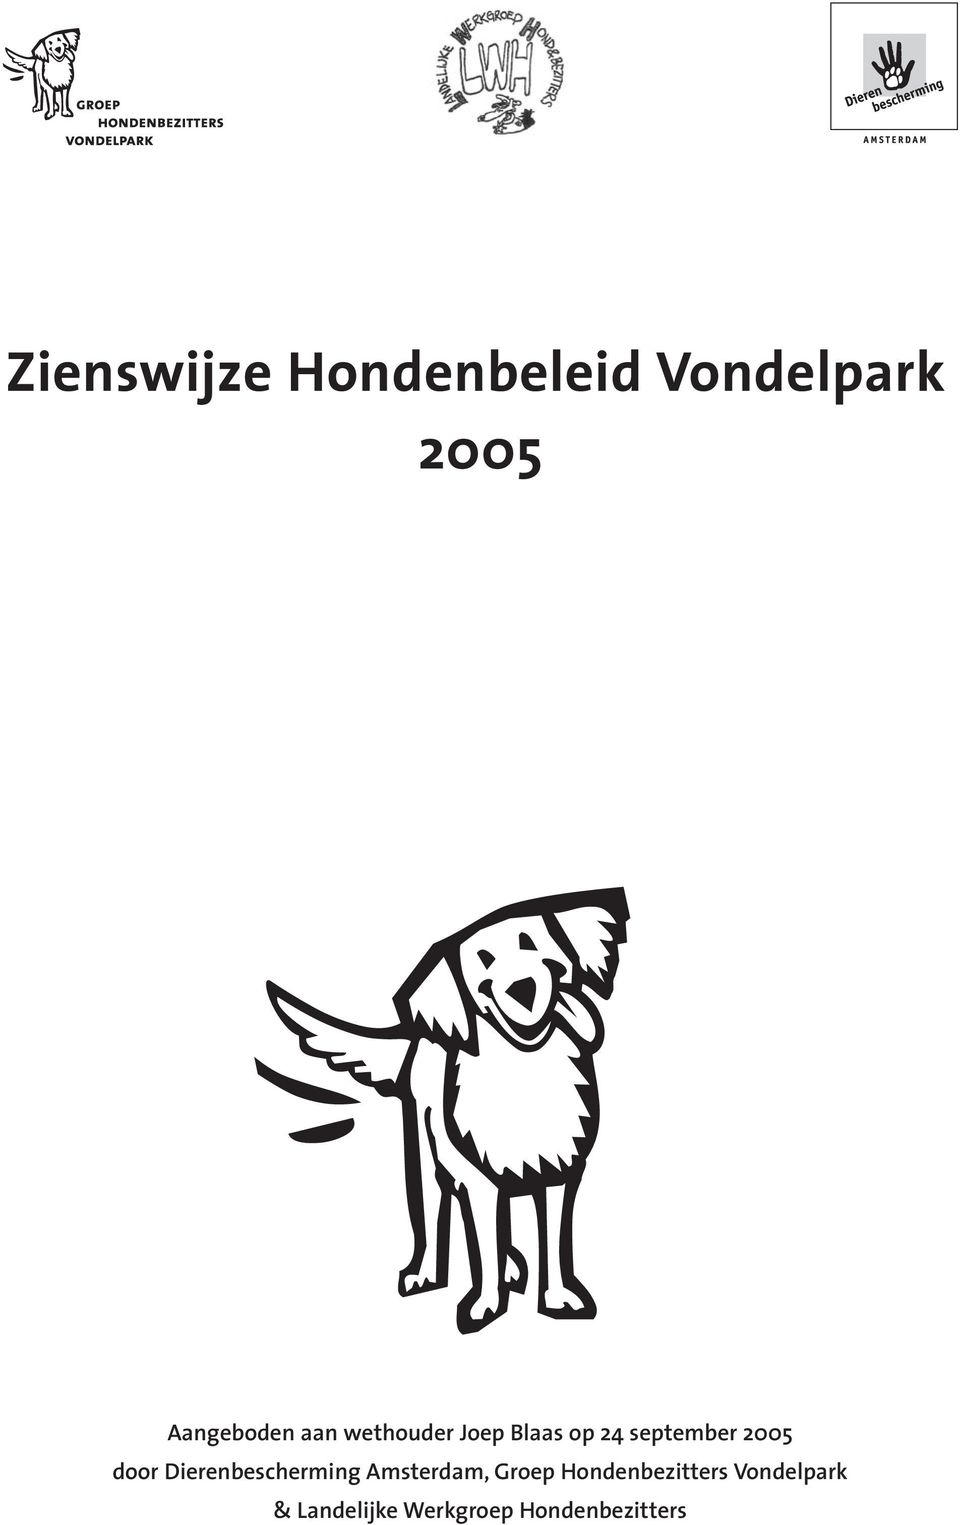 Dierenbescherming Amsterdam, Groep Hondenbezitters